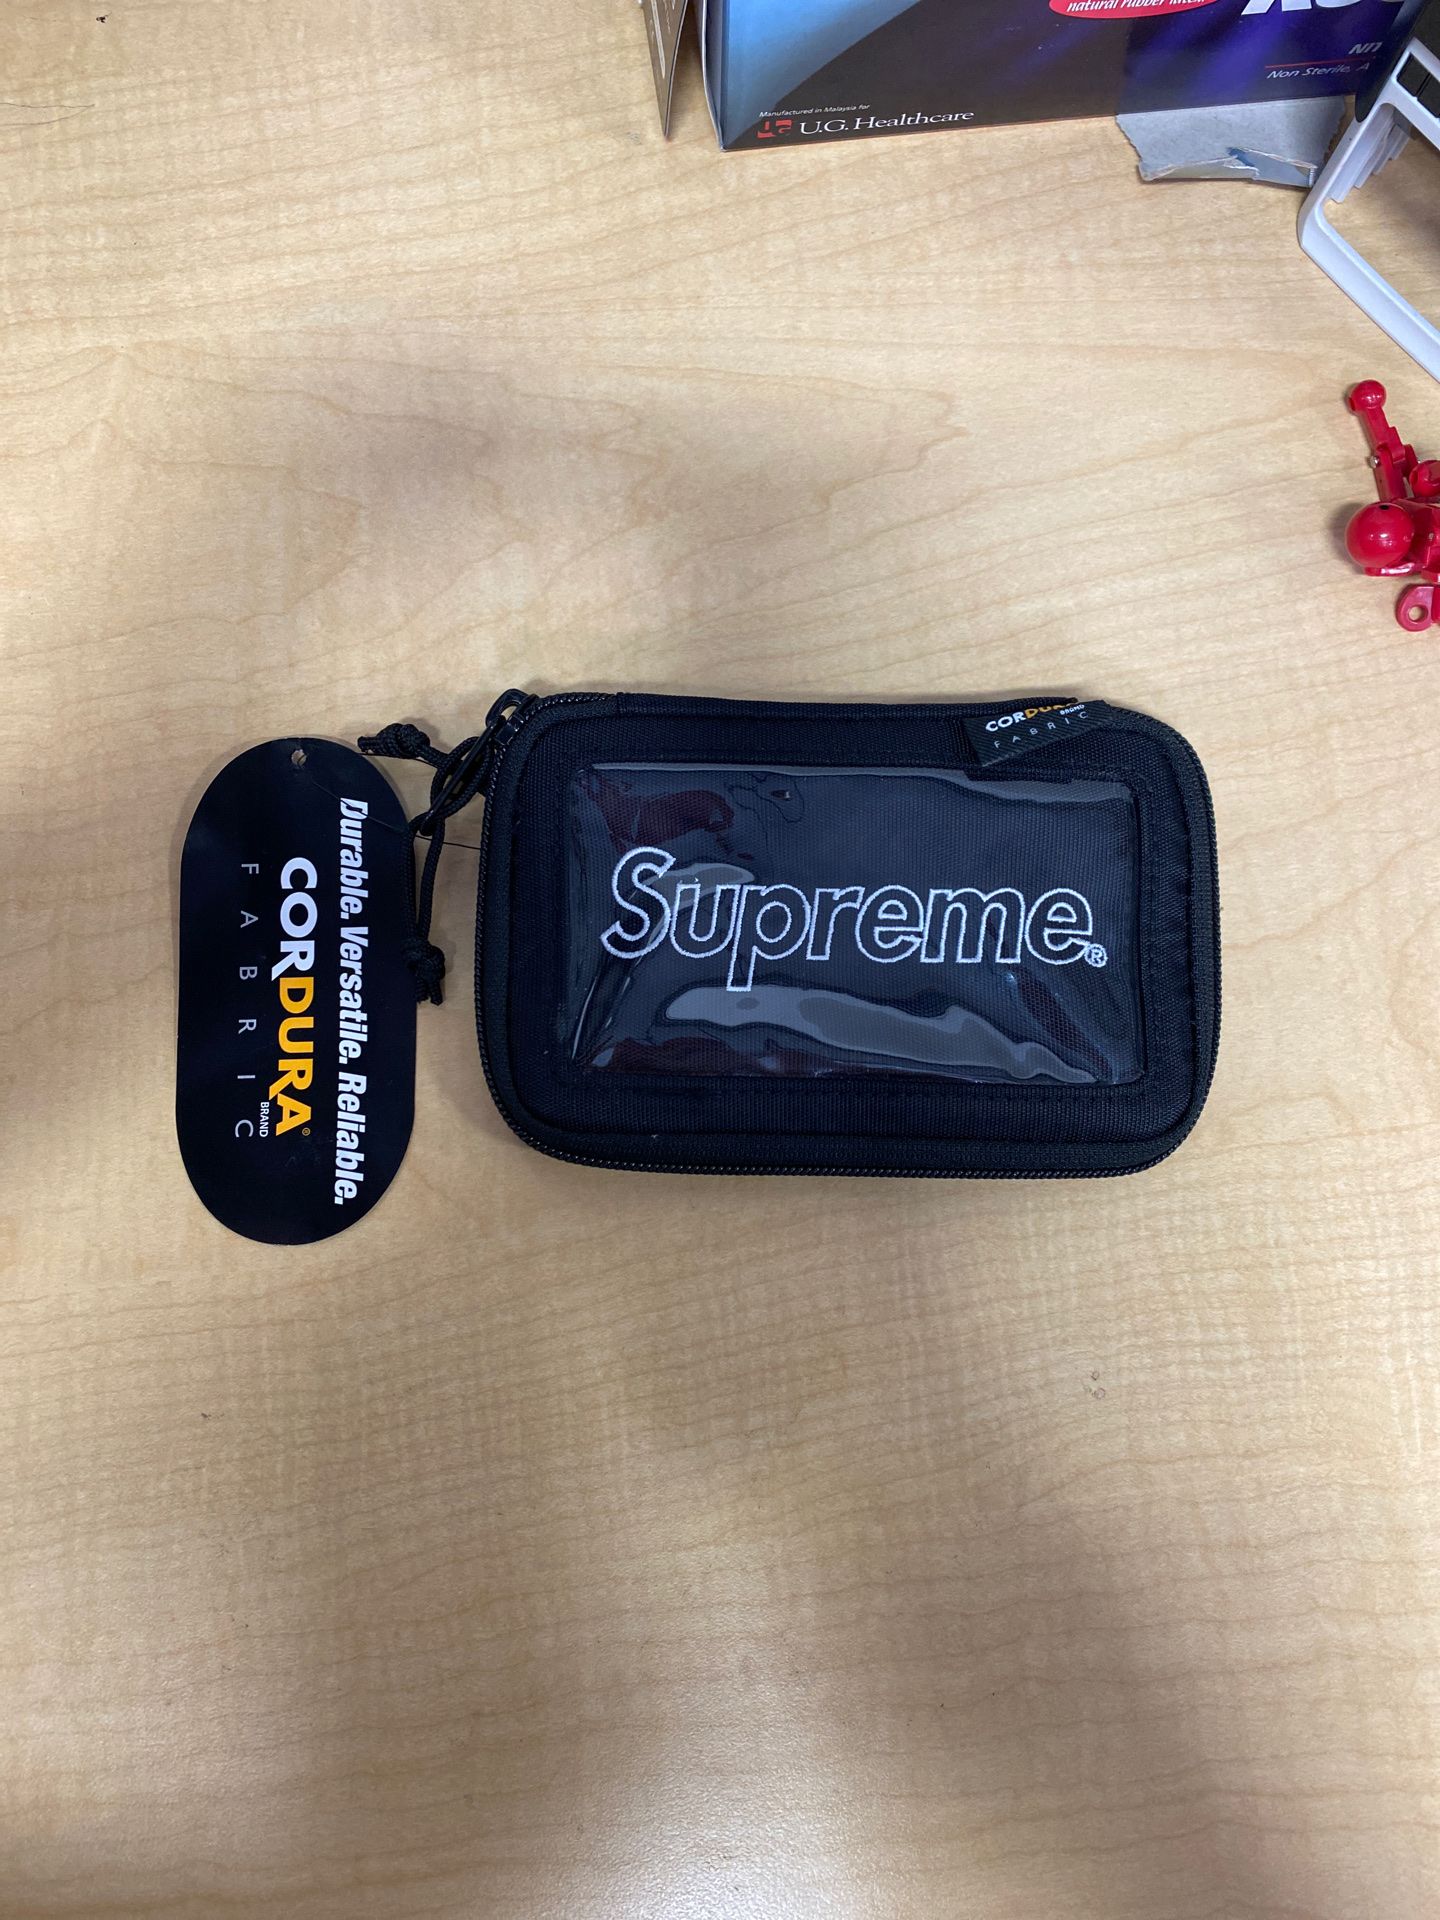 Supreme X cordura small zip pouch $50